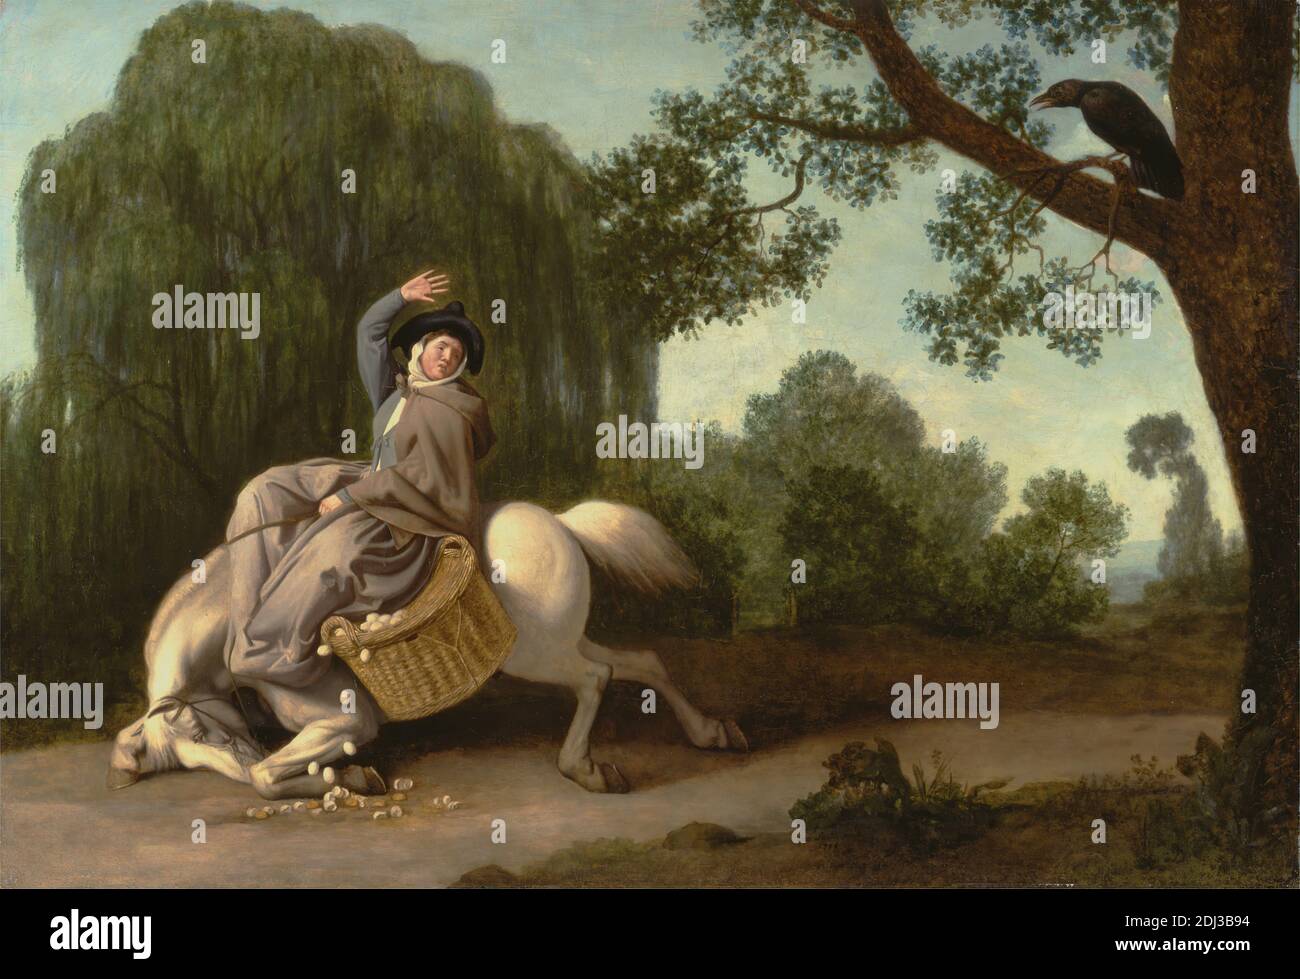 La femme de l'agriculteur et le Corbeau, George Stubbs, 1724–1806, British, 1786, cire d'abeille et huile à bord, support (PTG) : 26 1/2 x 38 1/2 pouces (67.3 x 97.8 cm), panier, oiseau, cassé, costume, rêve, oeufs, fermier, cinquante-et-un Fables en verset ou Fables de John gay (1727, partie la deuxième 1738), effrayé, genre sujet, geste, cheval (animal), paysage, thème littéraire, littérature, raven, femme, saule, femme Banque D'Images